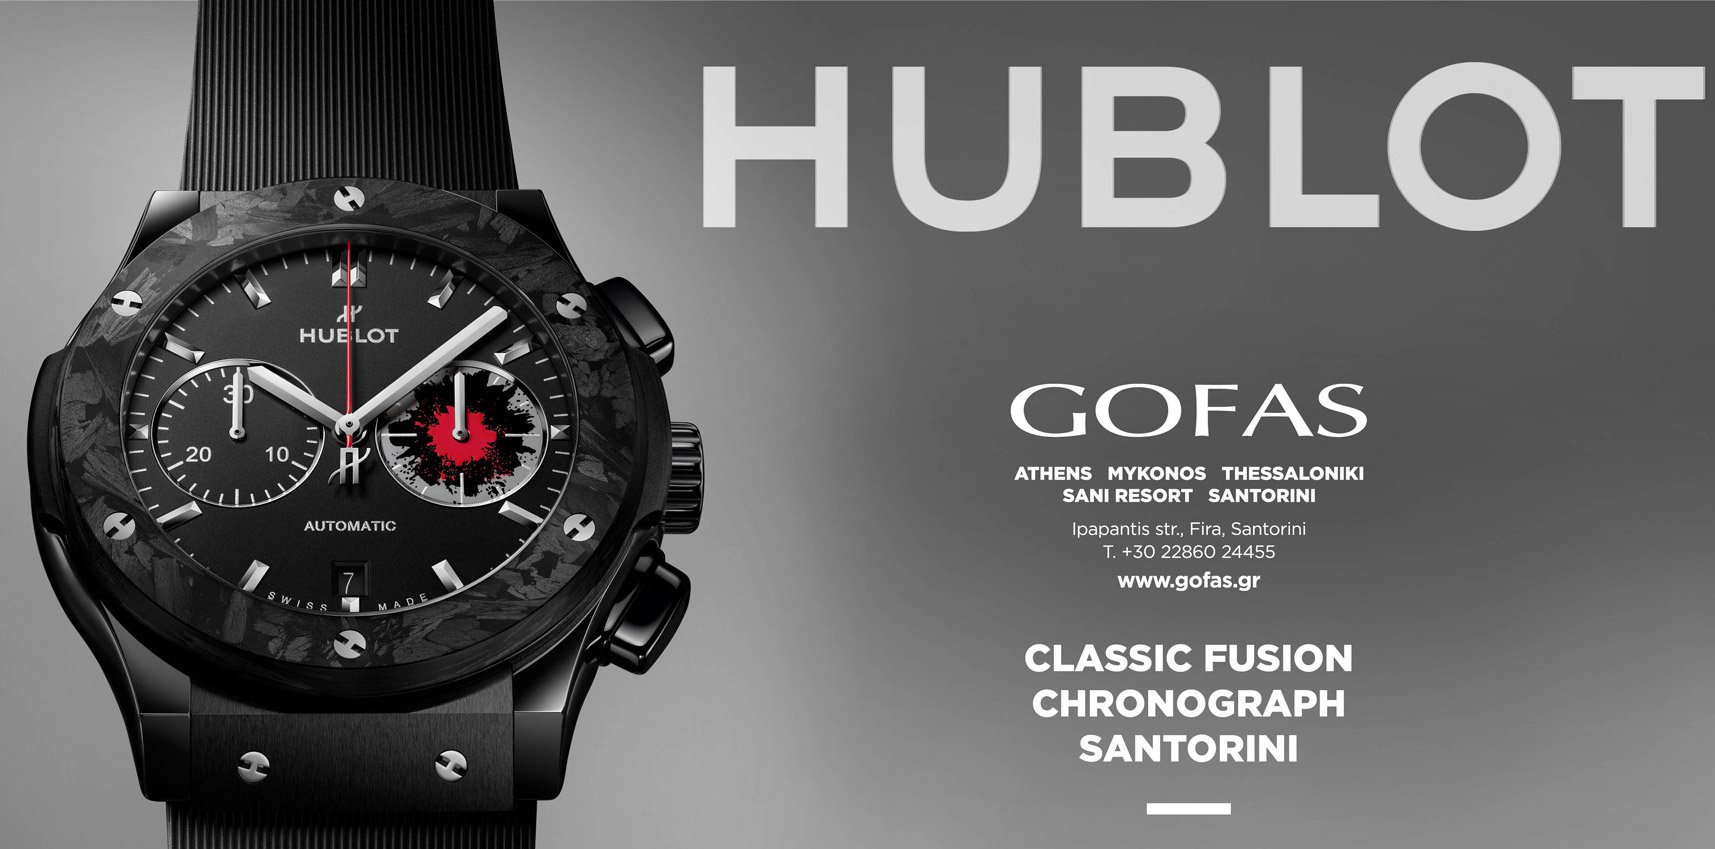 Η HUBLOT τιμά τη Σαντορίνη με το νέο Hublot Classic Fusion Chronograph Santorini Limited Edition